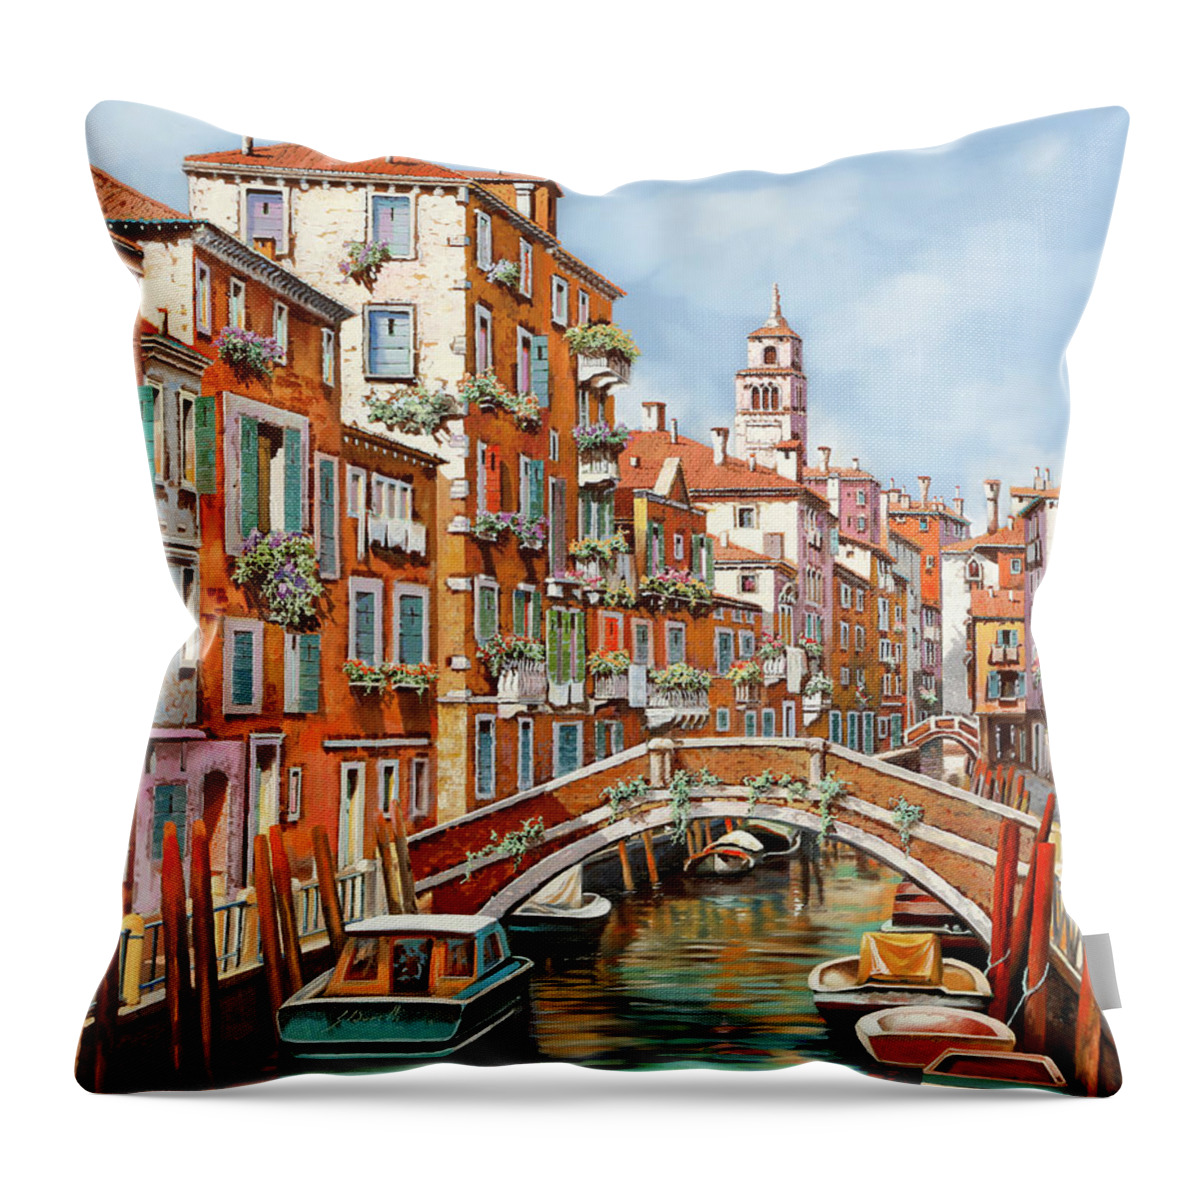 Venezia Throw Pillow featuring the painting Tanta Venezia by Guido Borelli